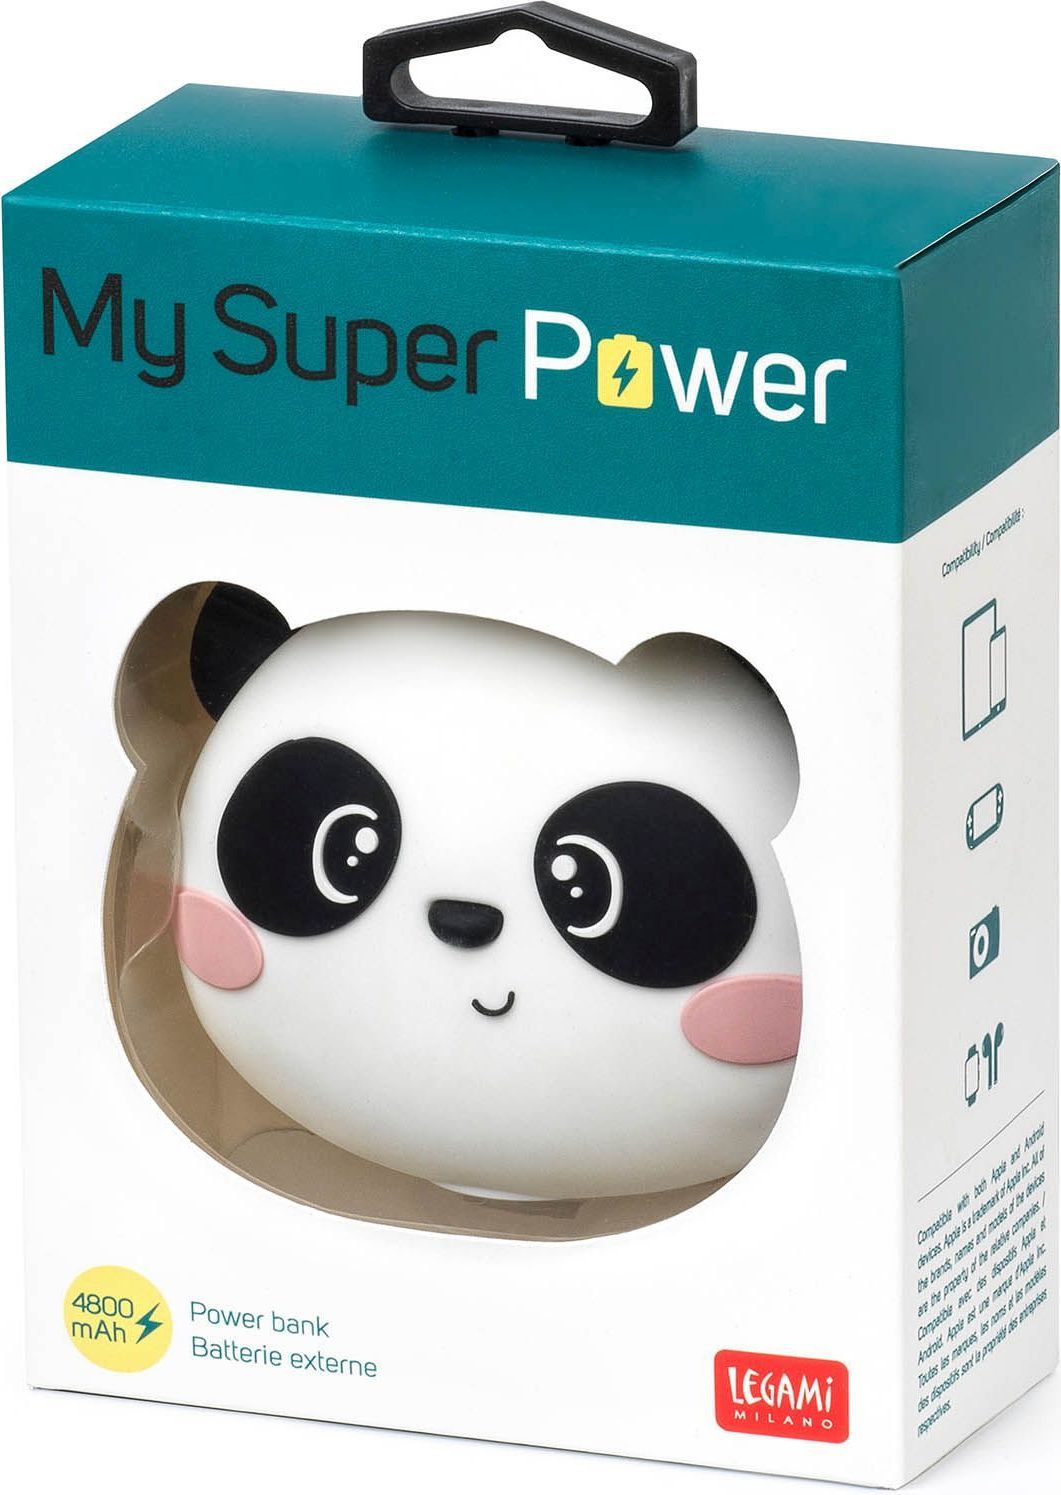 Legami My Super Power_4800 Mah - Power Bank - Panda